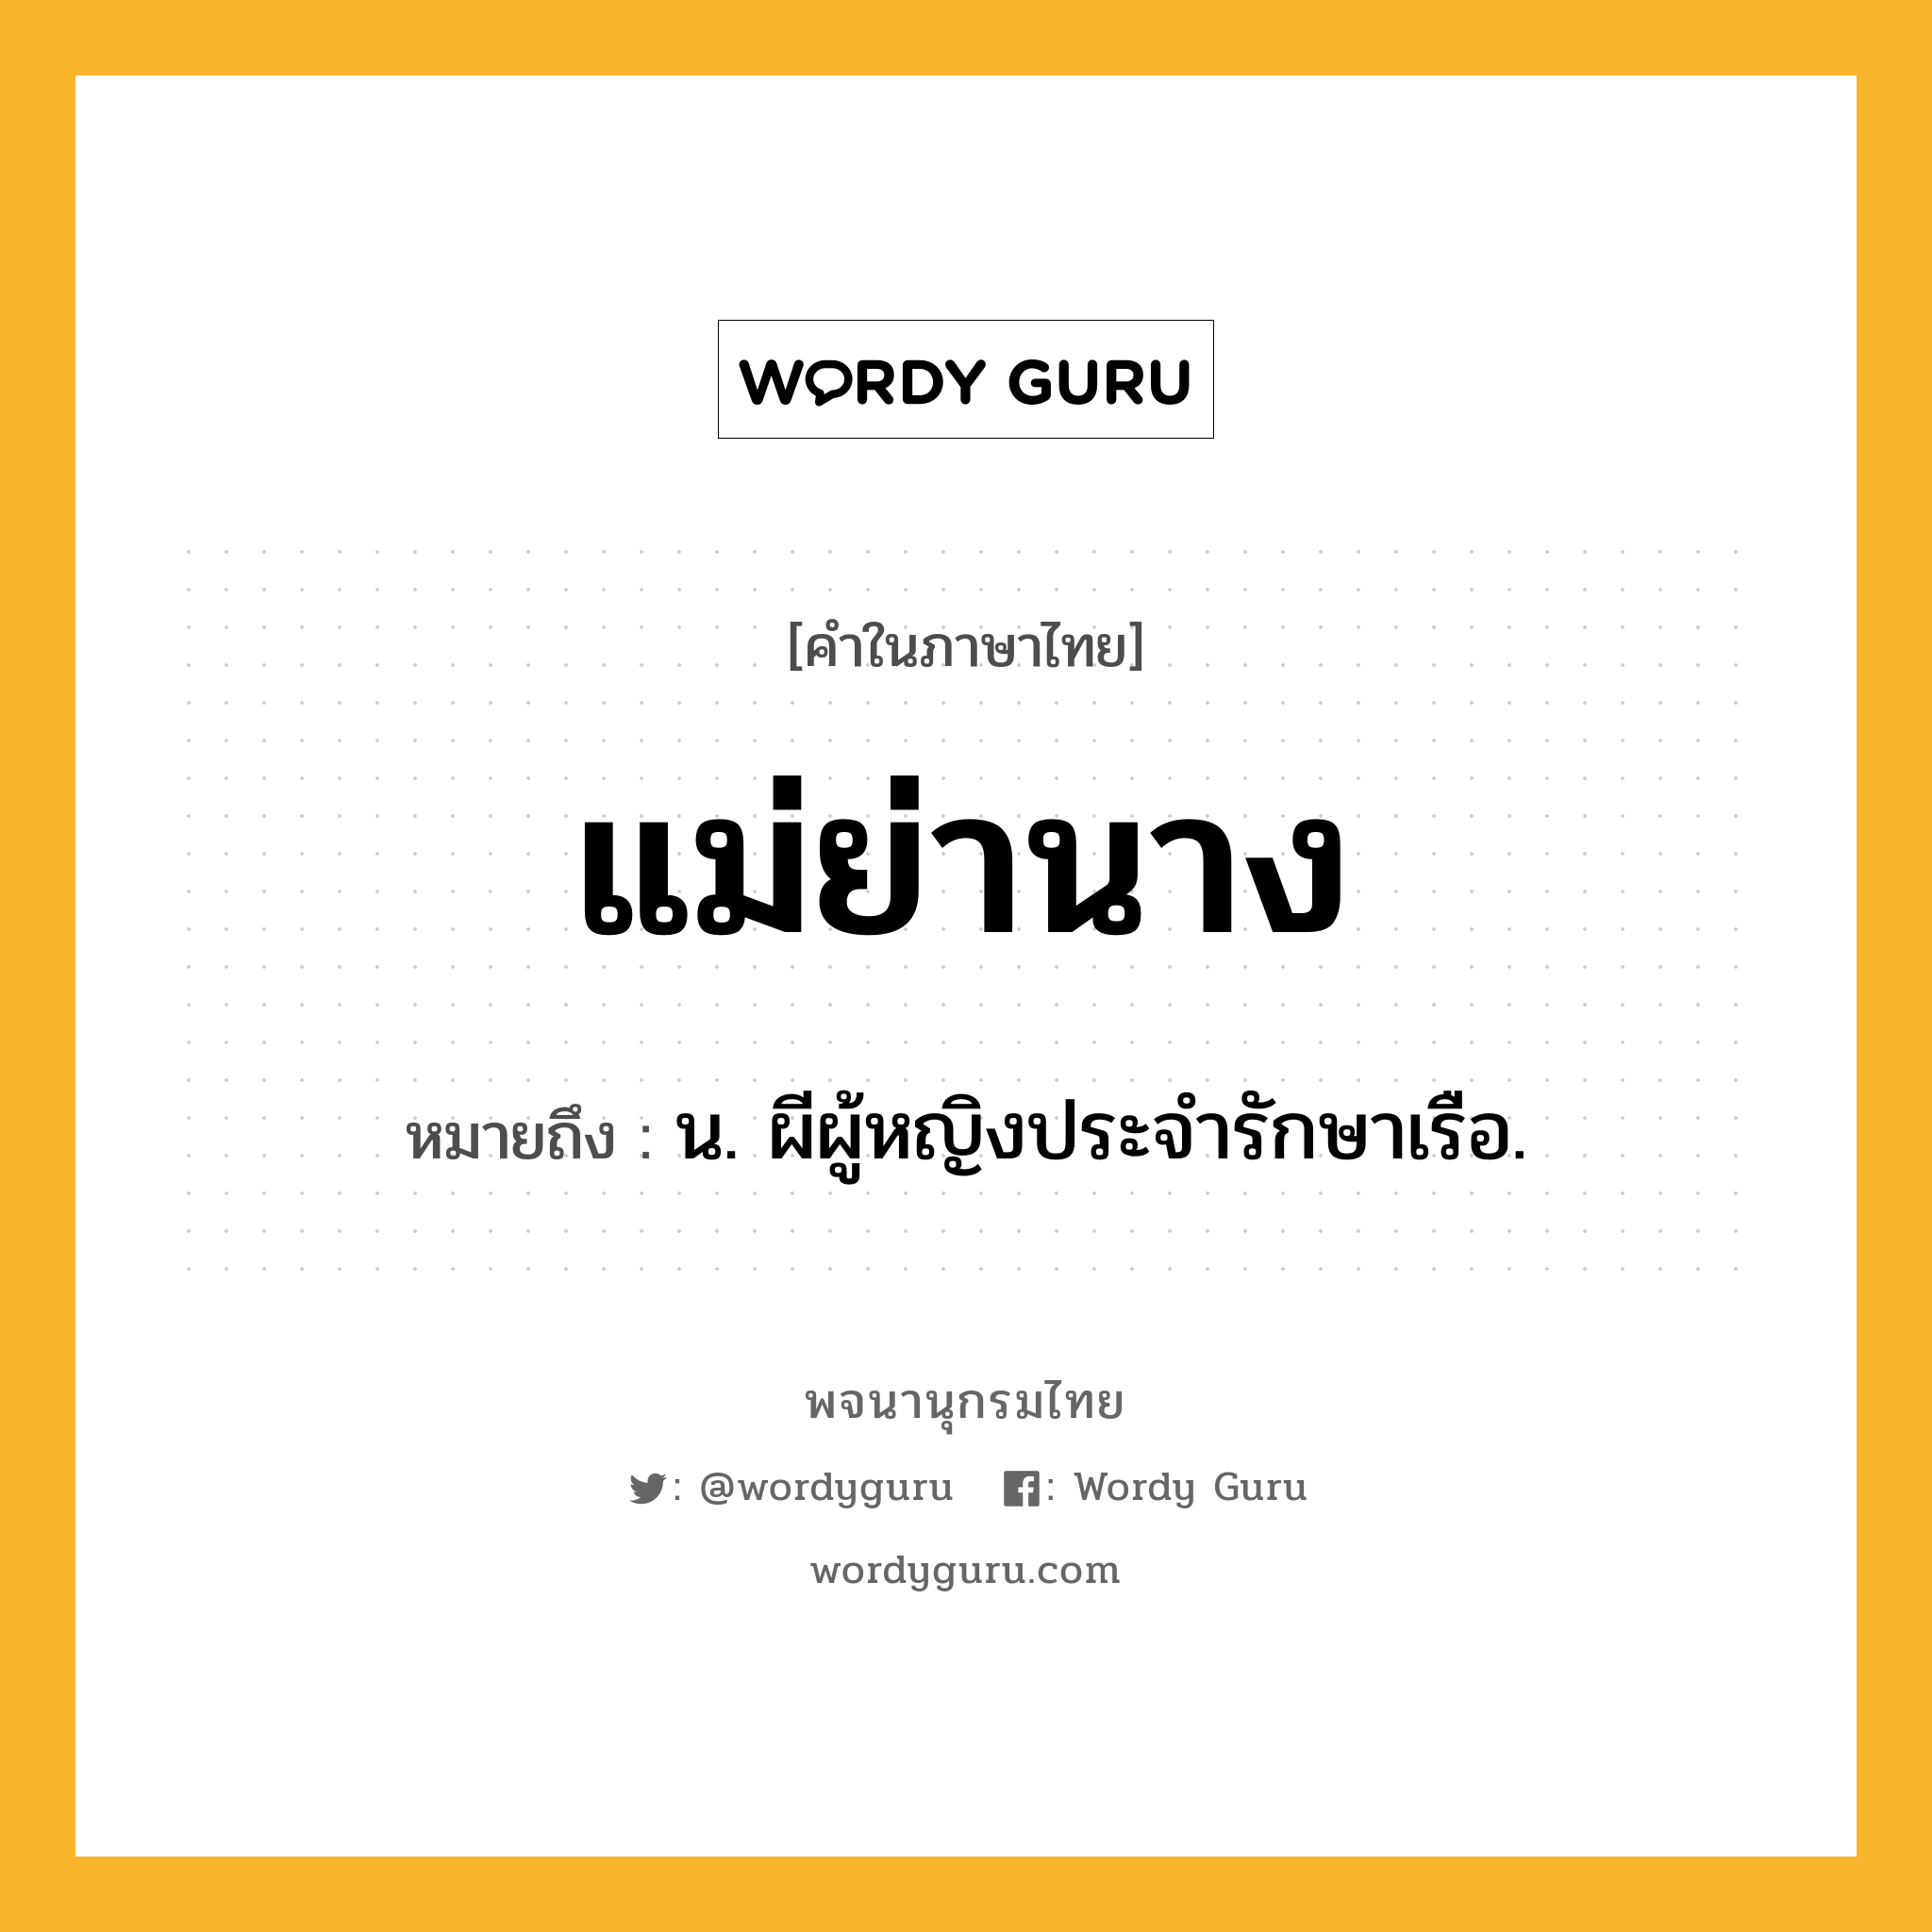 แม่ย่านาง ความหมาย หมายถึงอะไร?, คำในภาษาไทย แม่ย่านาง หมายถึง น. ผีผู้หญิงประจำรักษาเรือ.